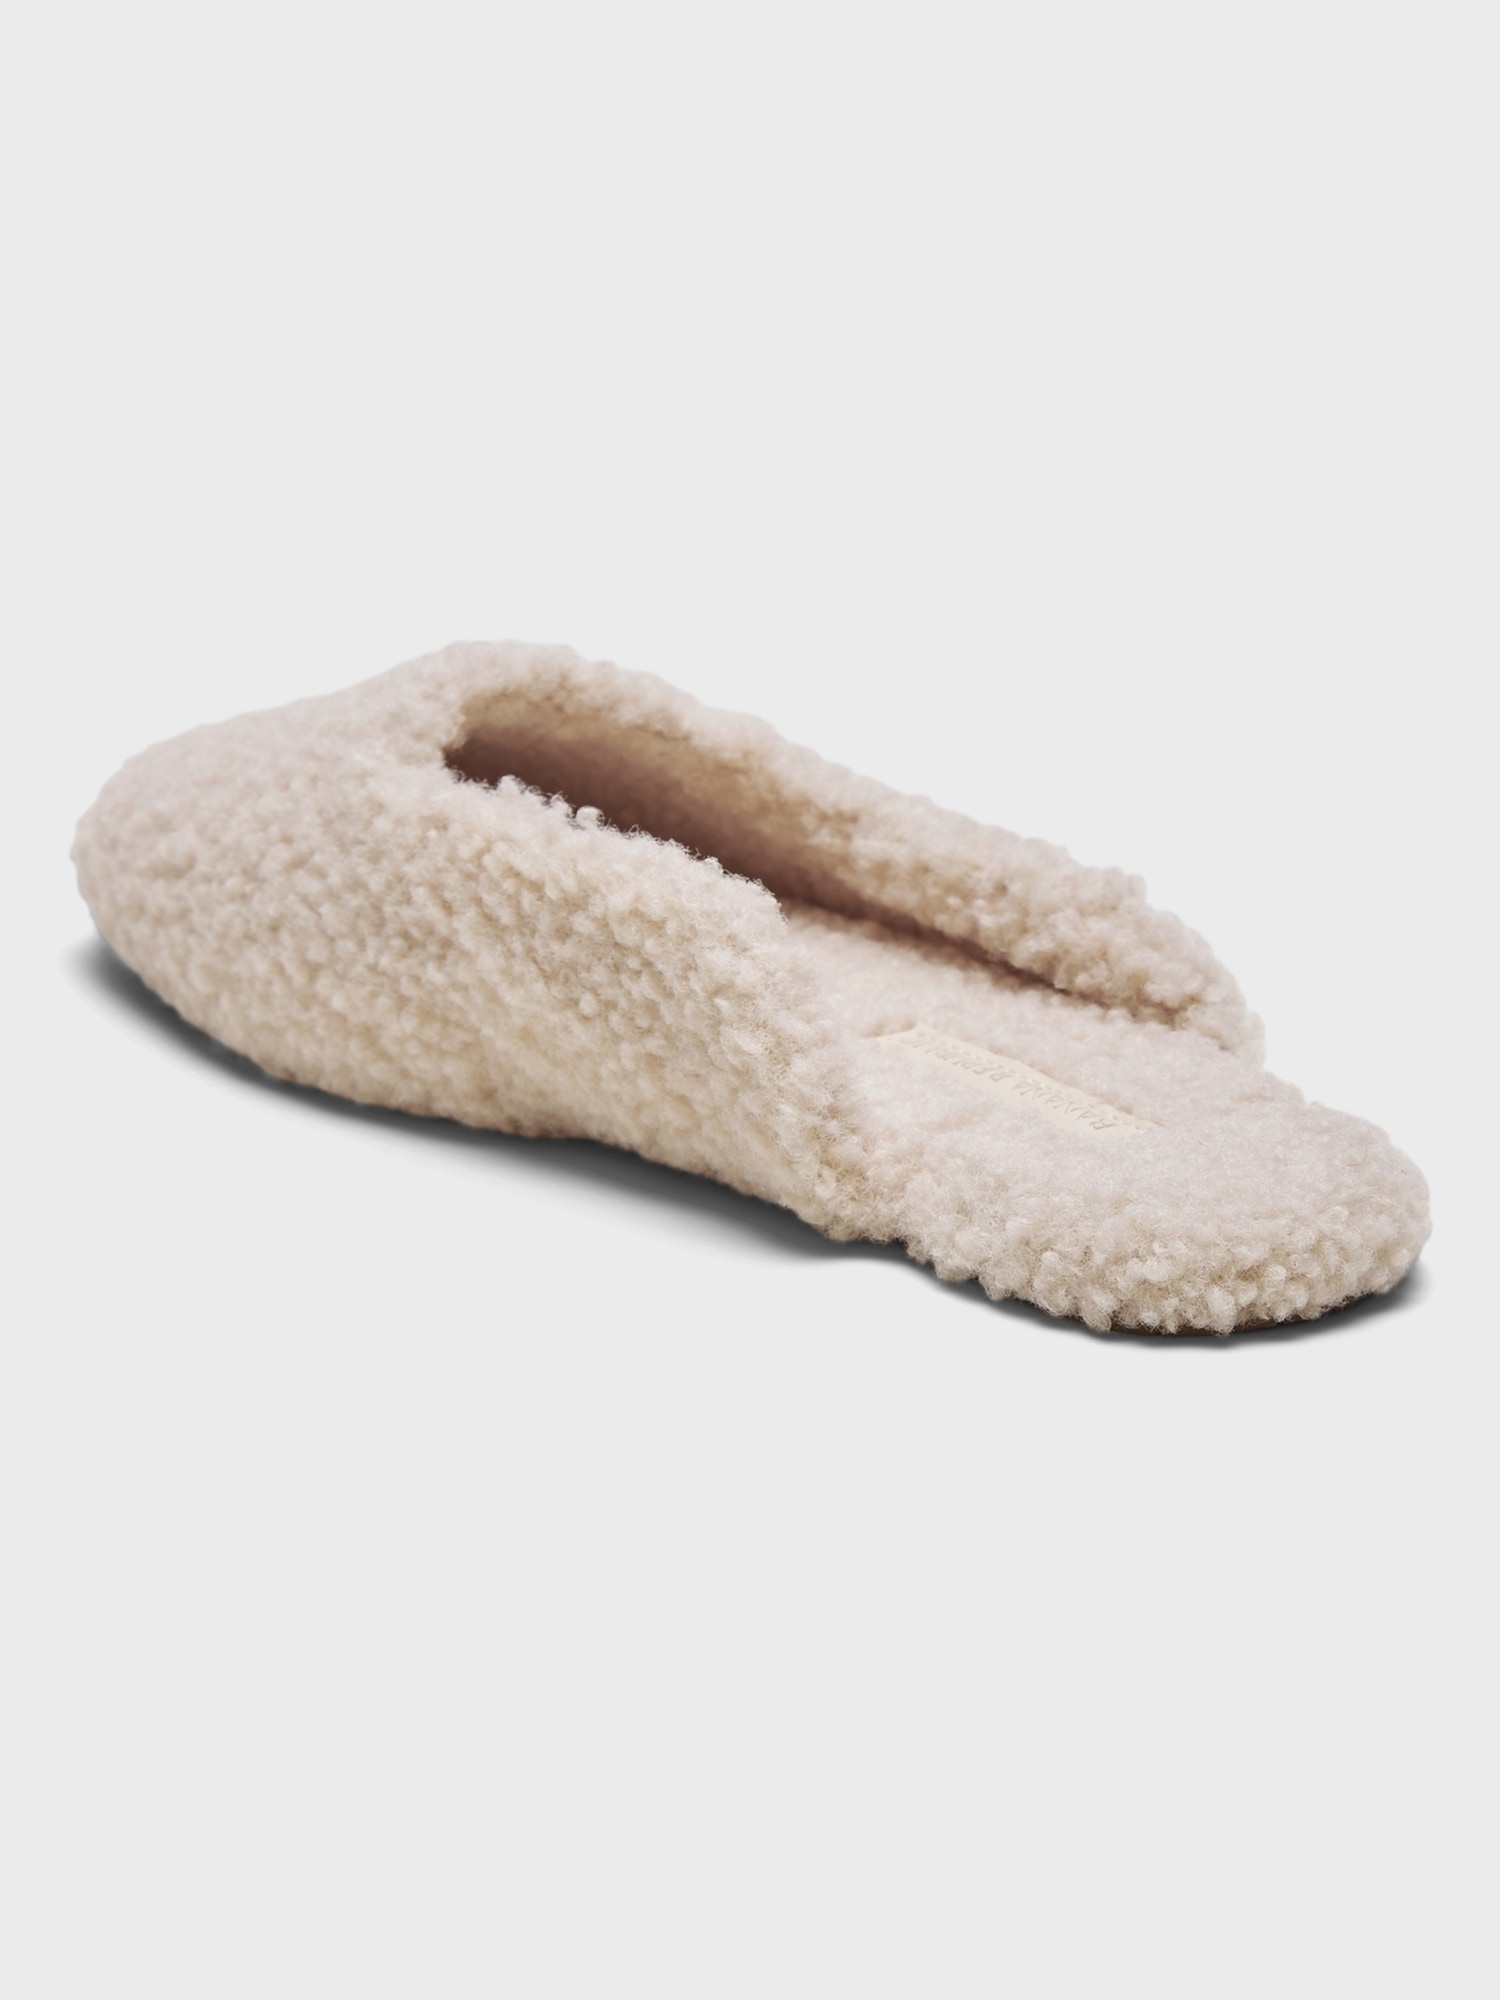 indoor slippers